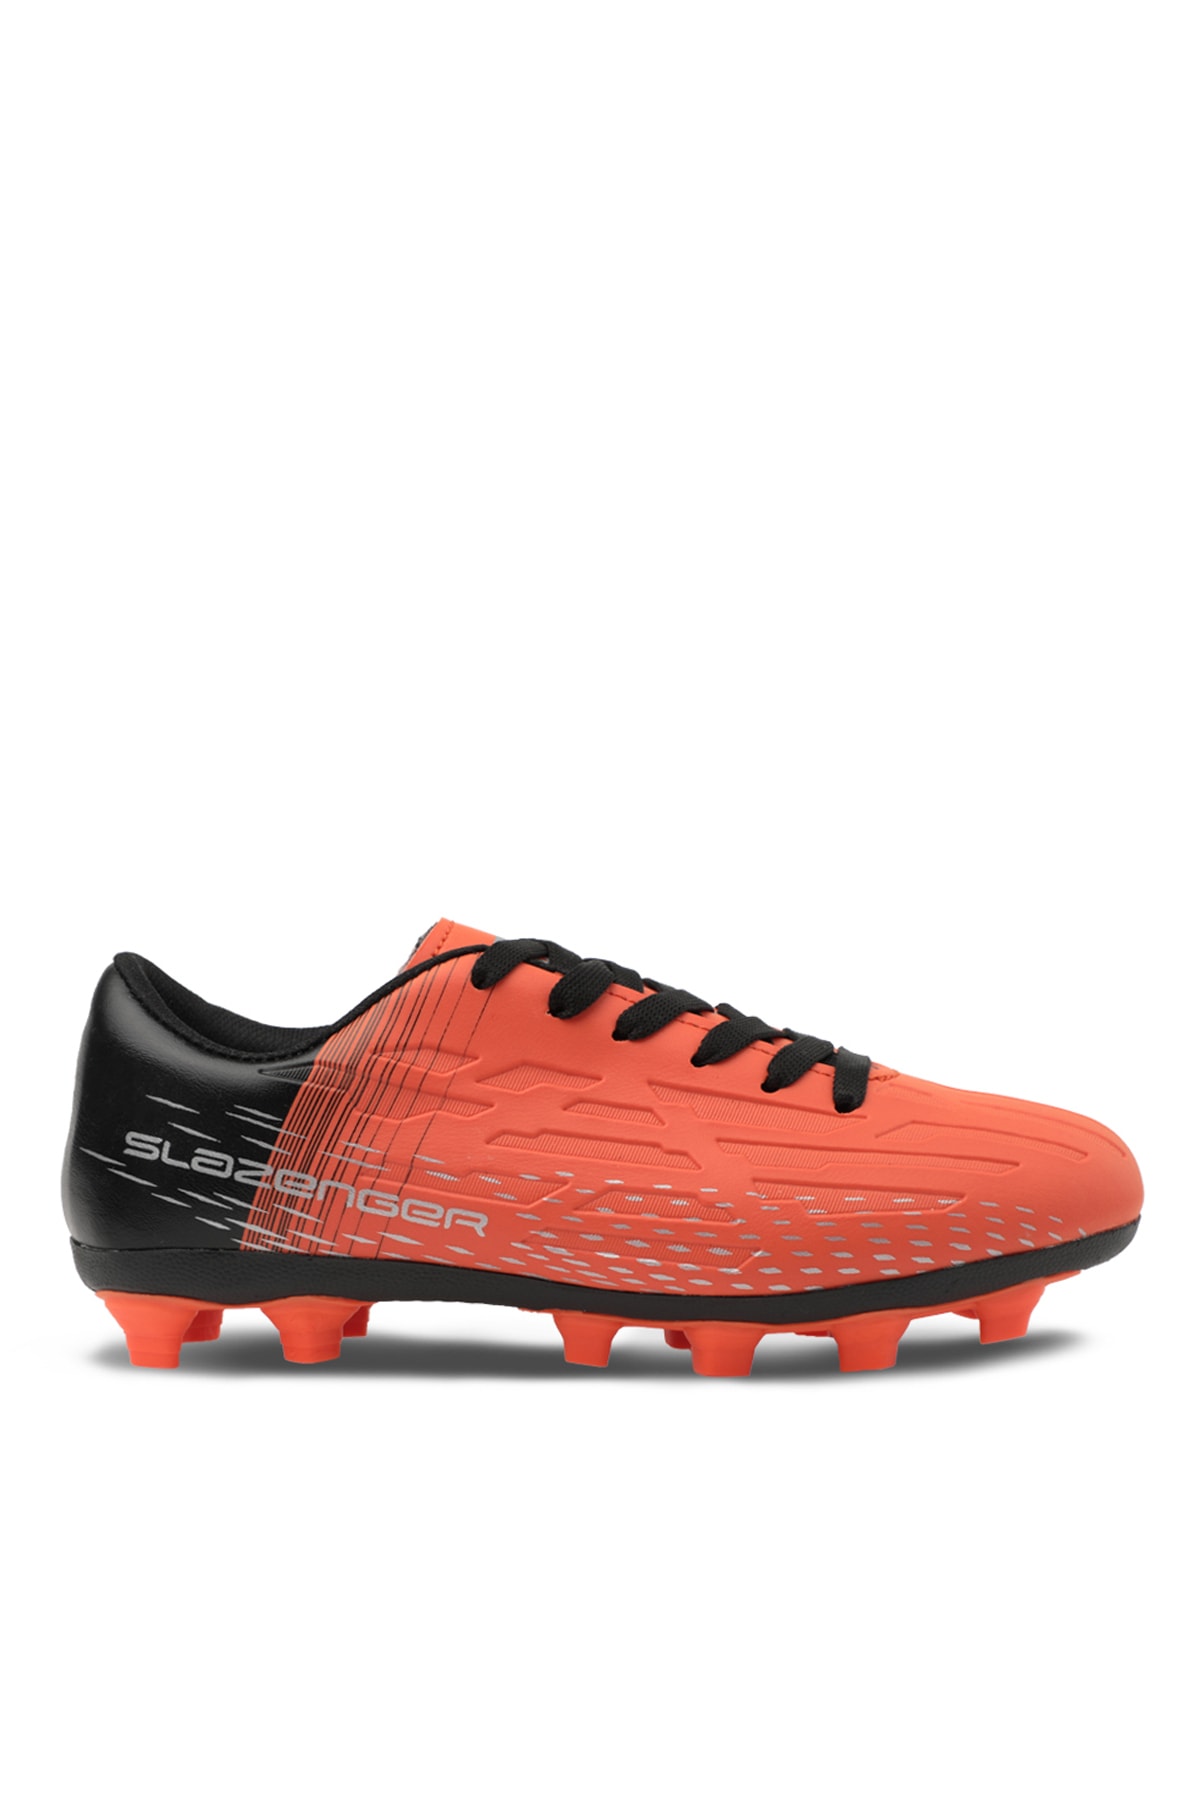 Slazenger Score I Kr Football Mens Turf Shoes Neon Orange / Black.